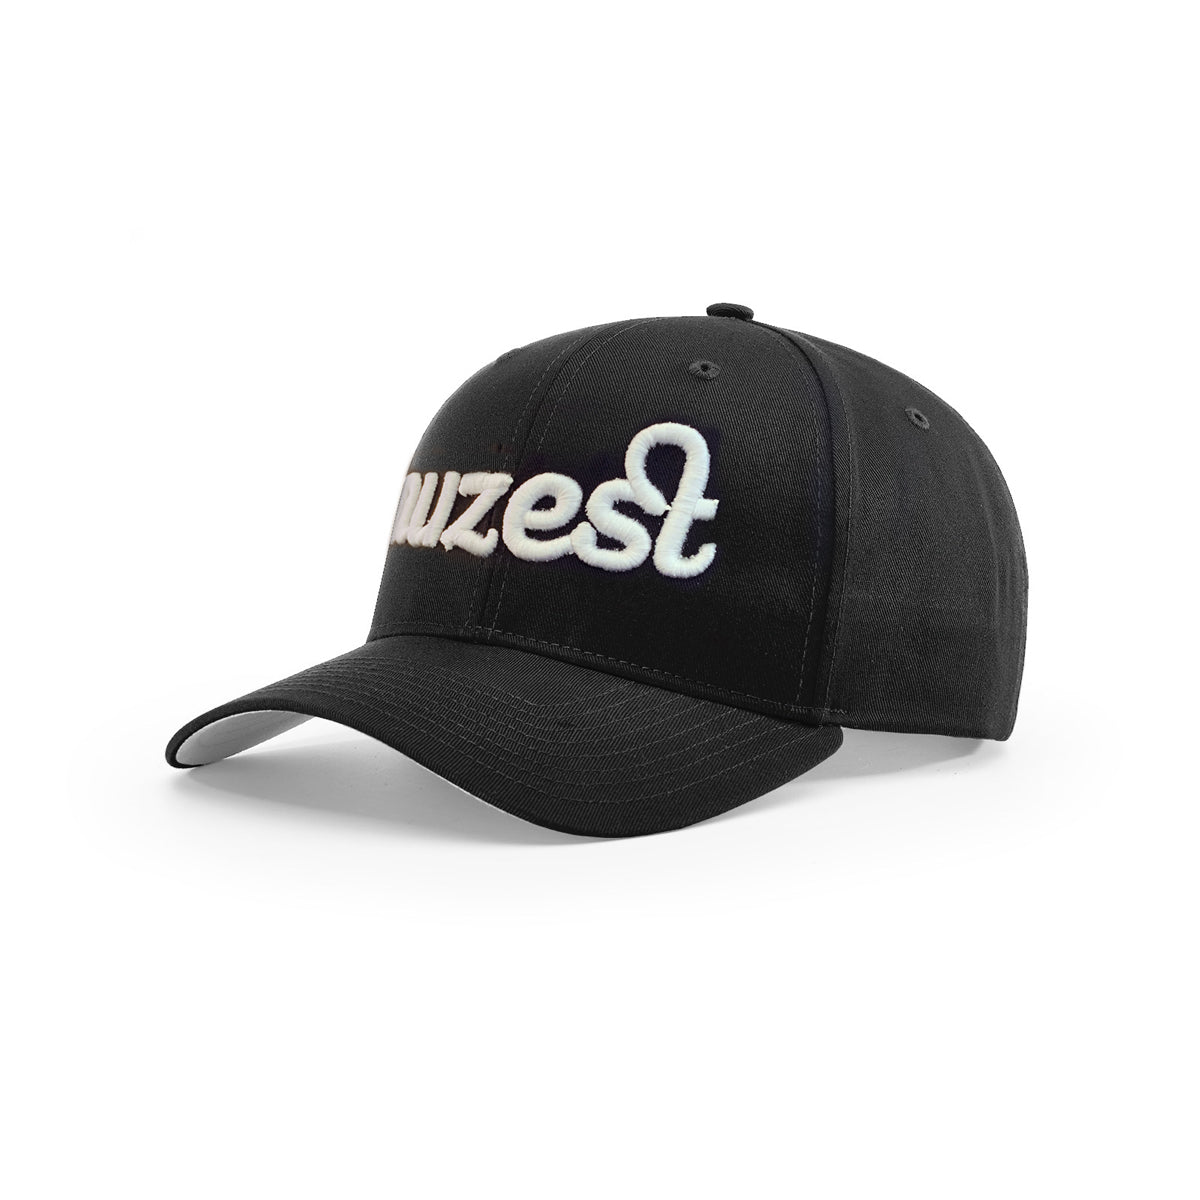 Nuzest Baseball Cap with Logo